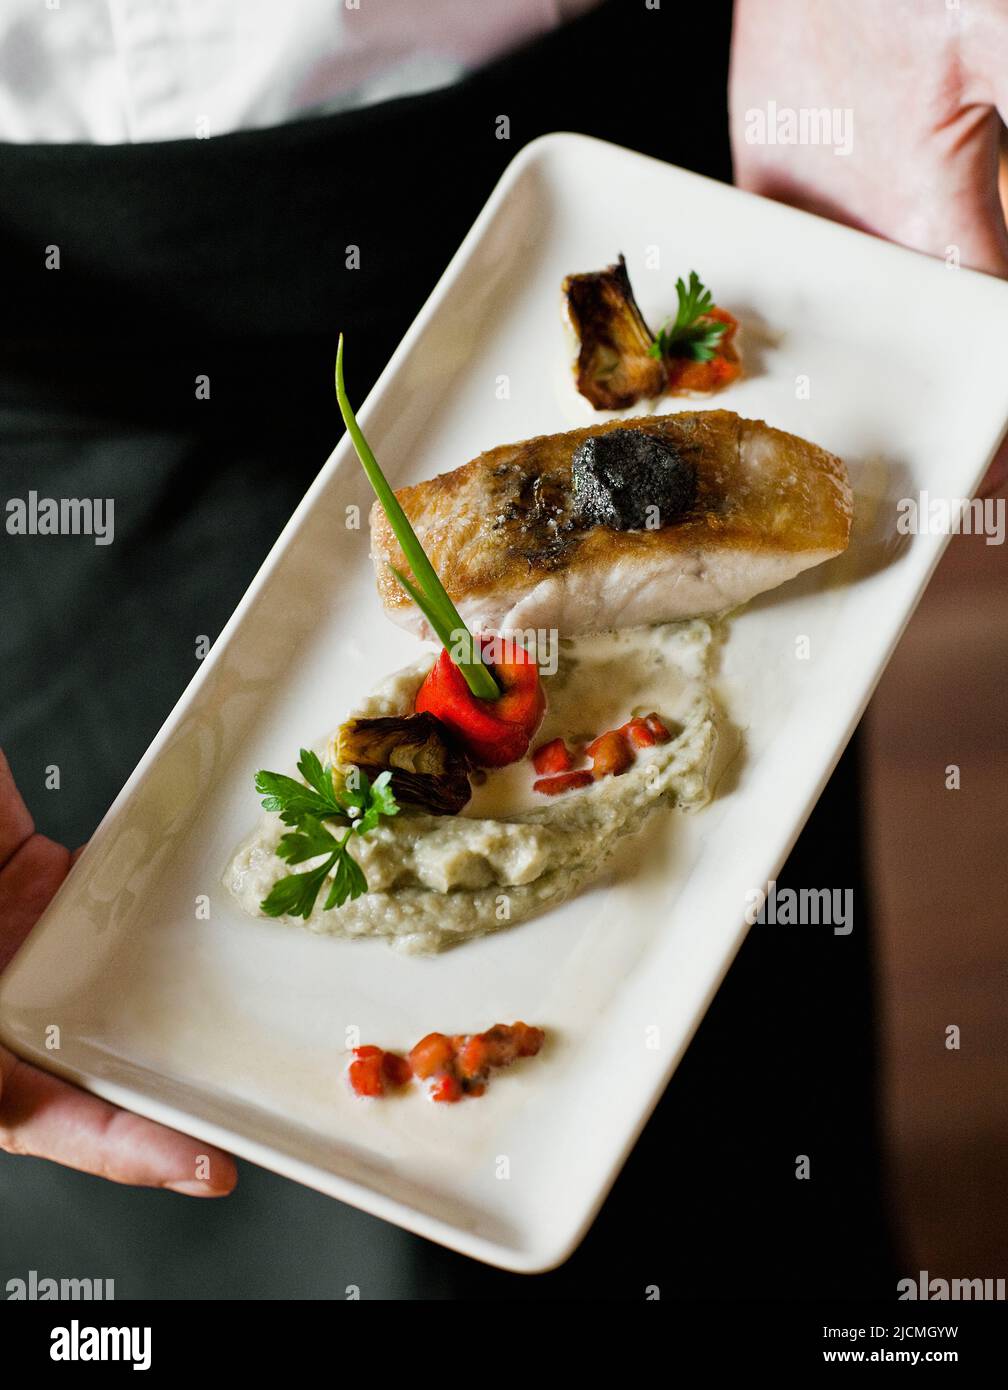 Filetto di branzino arrosto con morbido tapenade di olive, caviale di melanzane e barigoule di carciofi. Siem Reap, Cambogia. Foto Stock